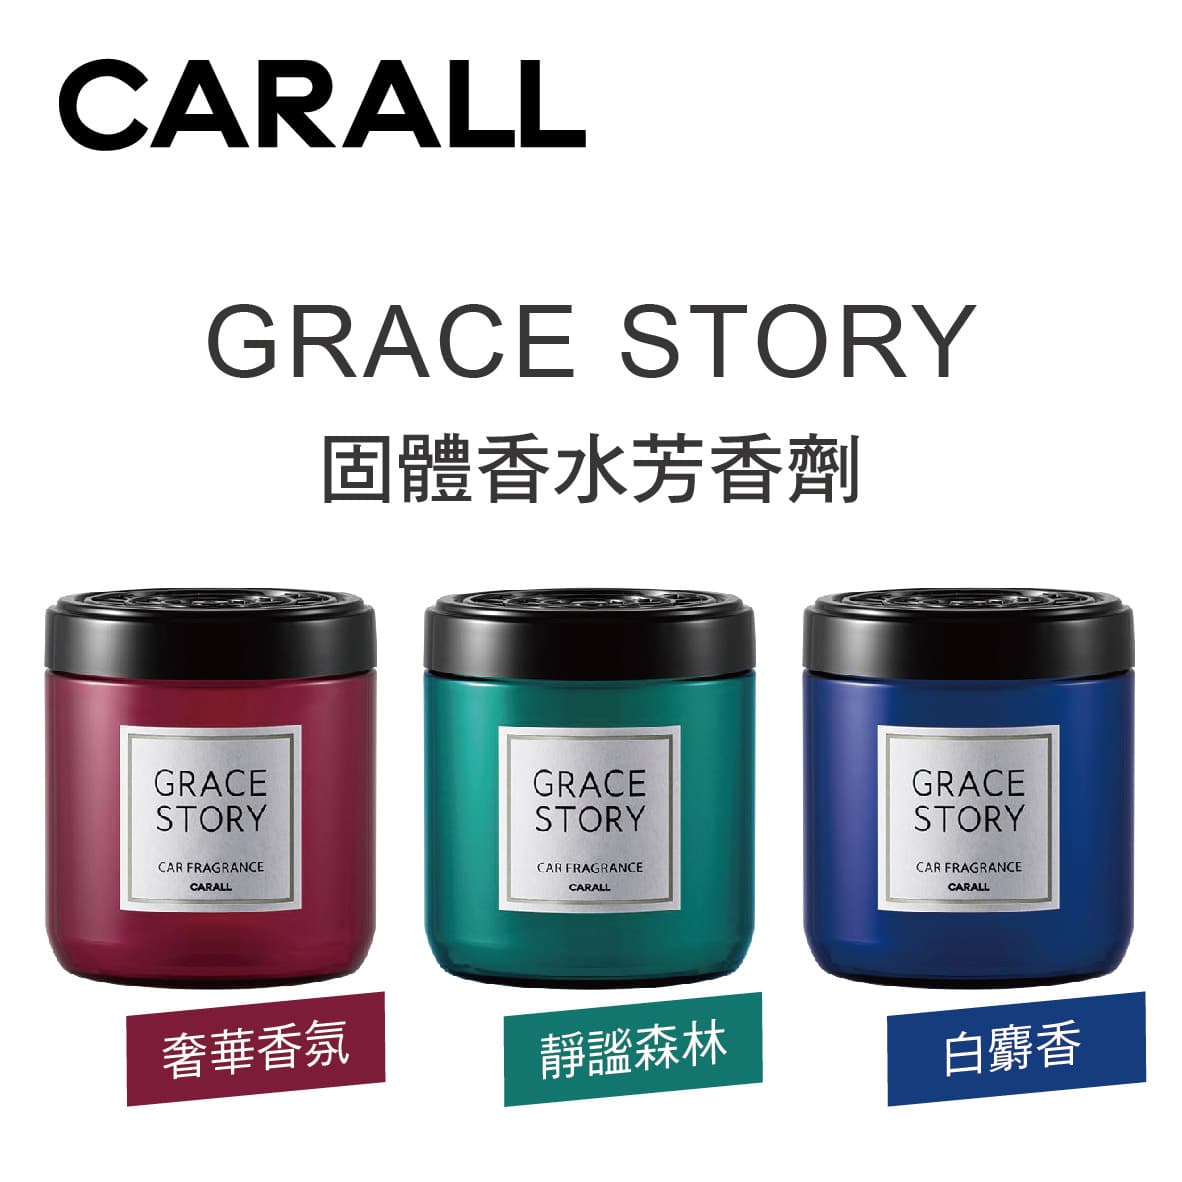 真便宜 CARALL GRACE STORY 固體香水芳香劑160ml